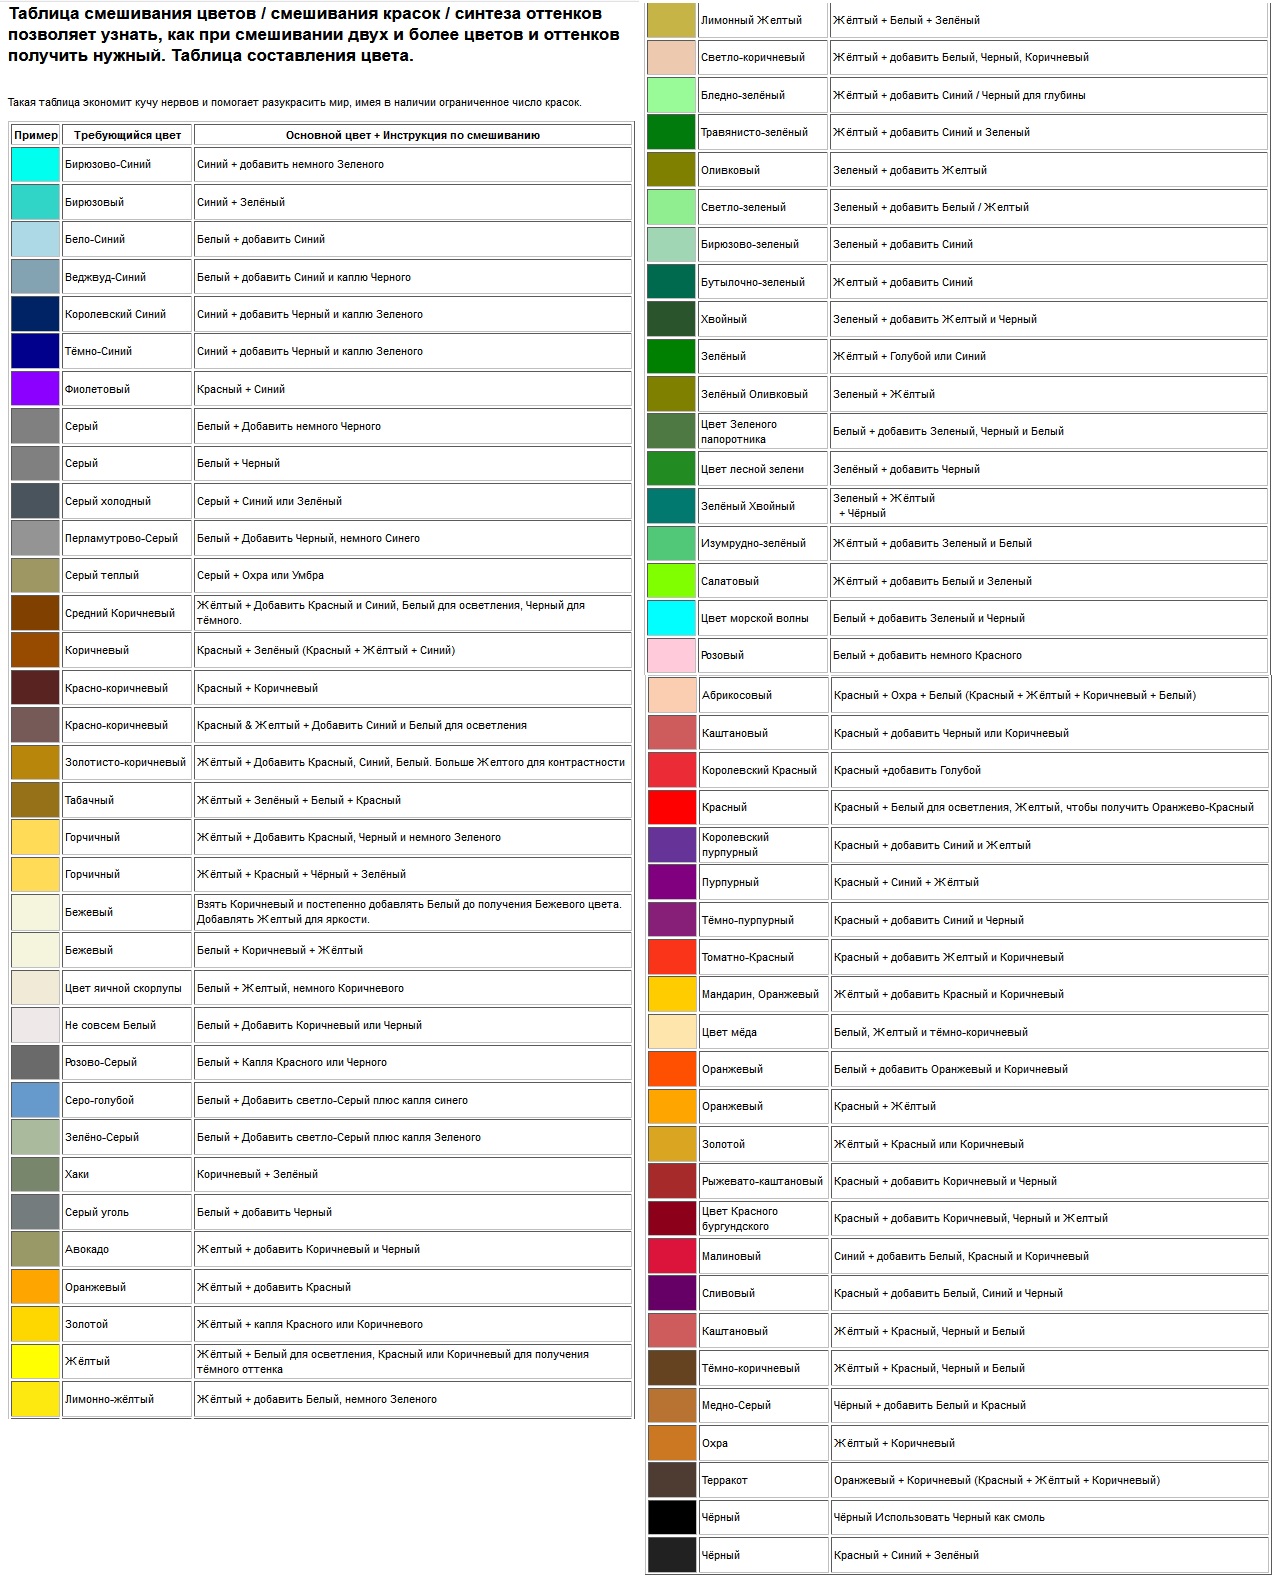 Таблица смешивания цветов / смешивания красок / синтеза оттенков позволяет узнать, как при смешивании двух и более цветов и оттенков получить нужный